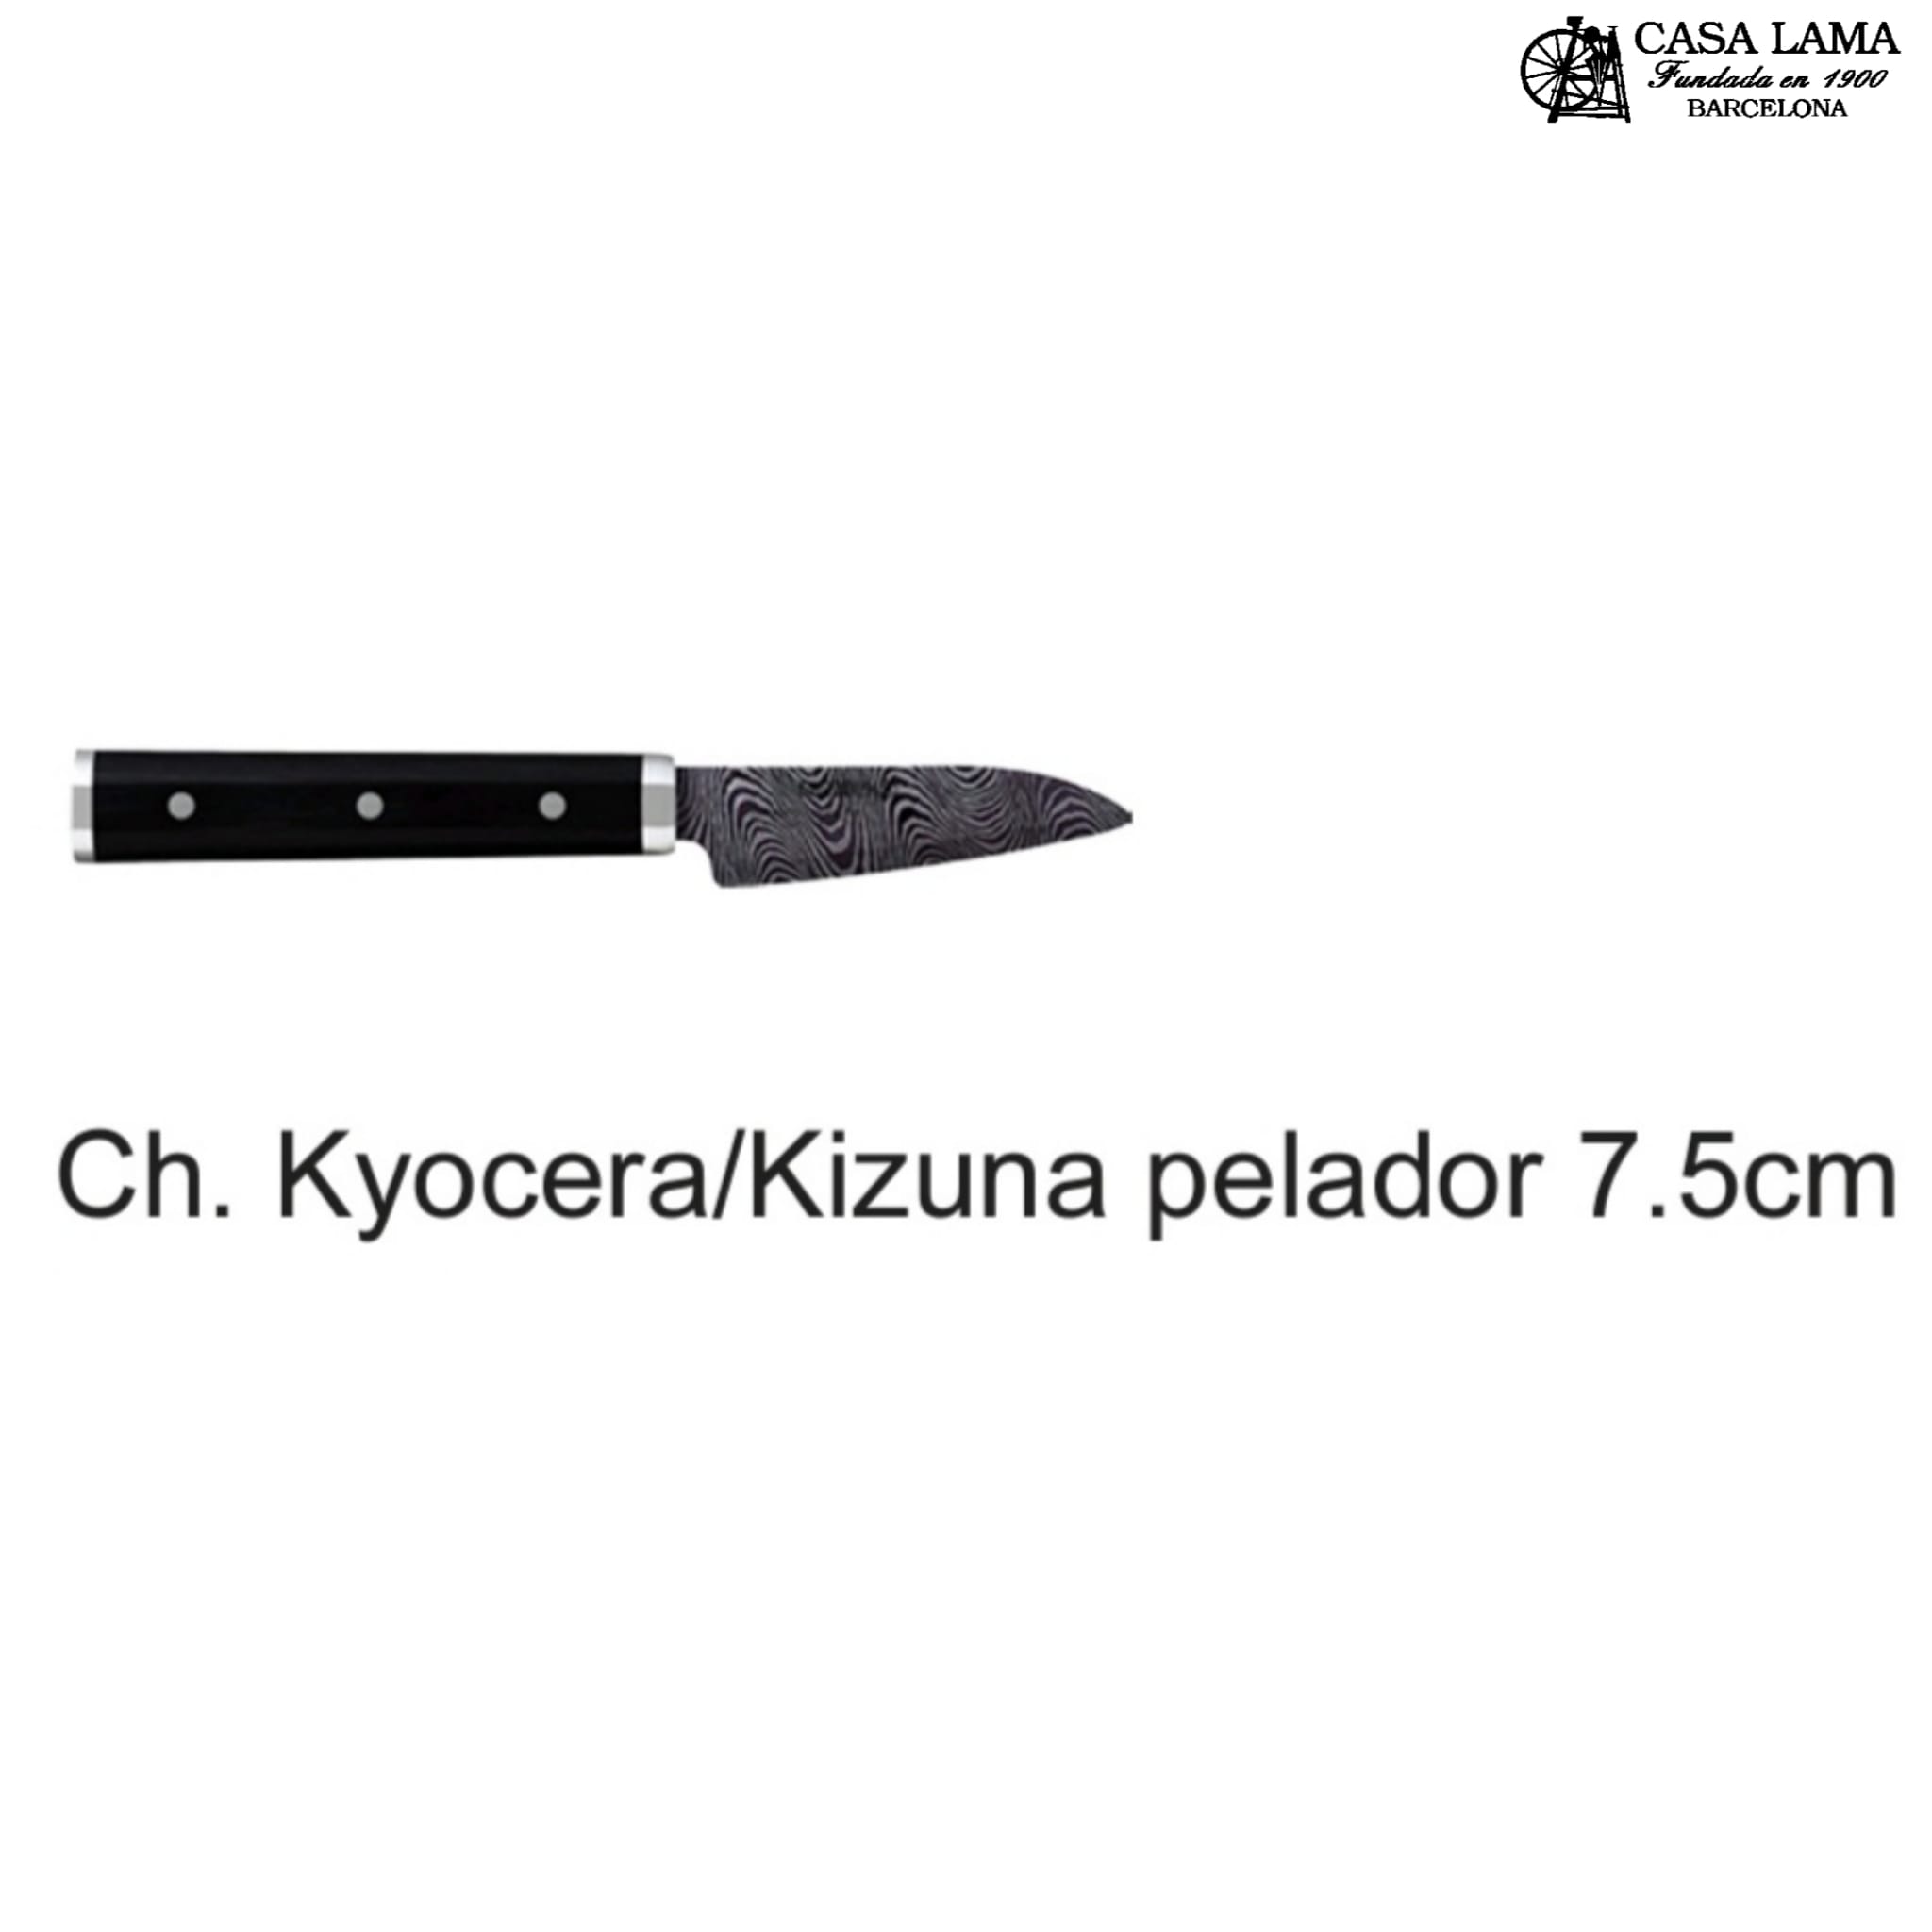 Cuchillo Kyocera Kizuna pelador 7,5cm 